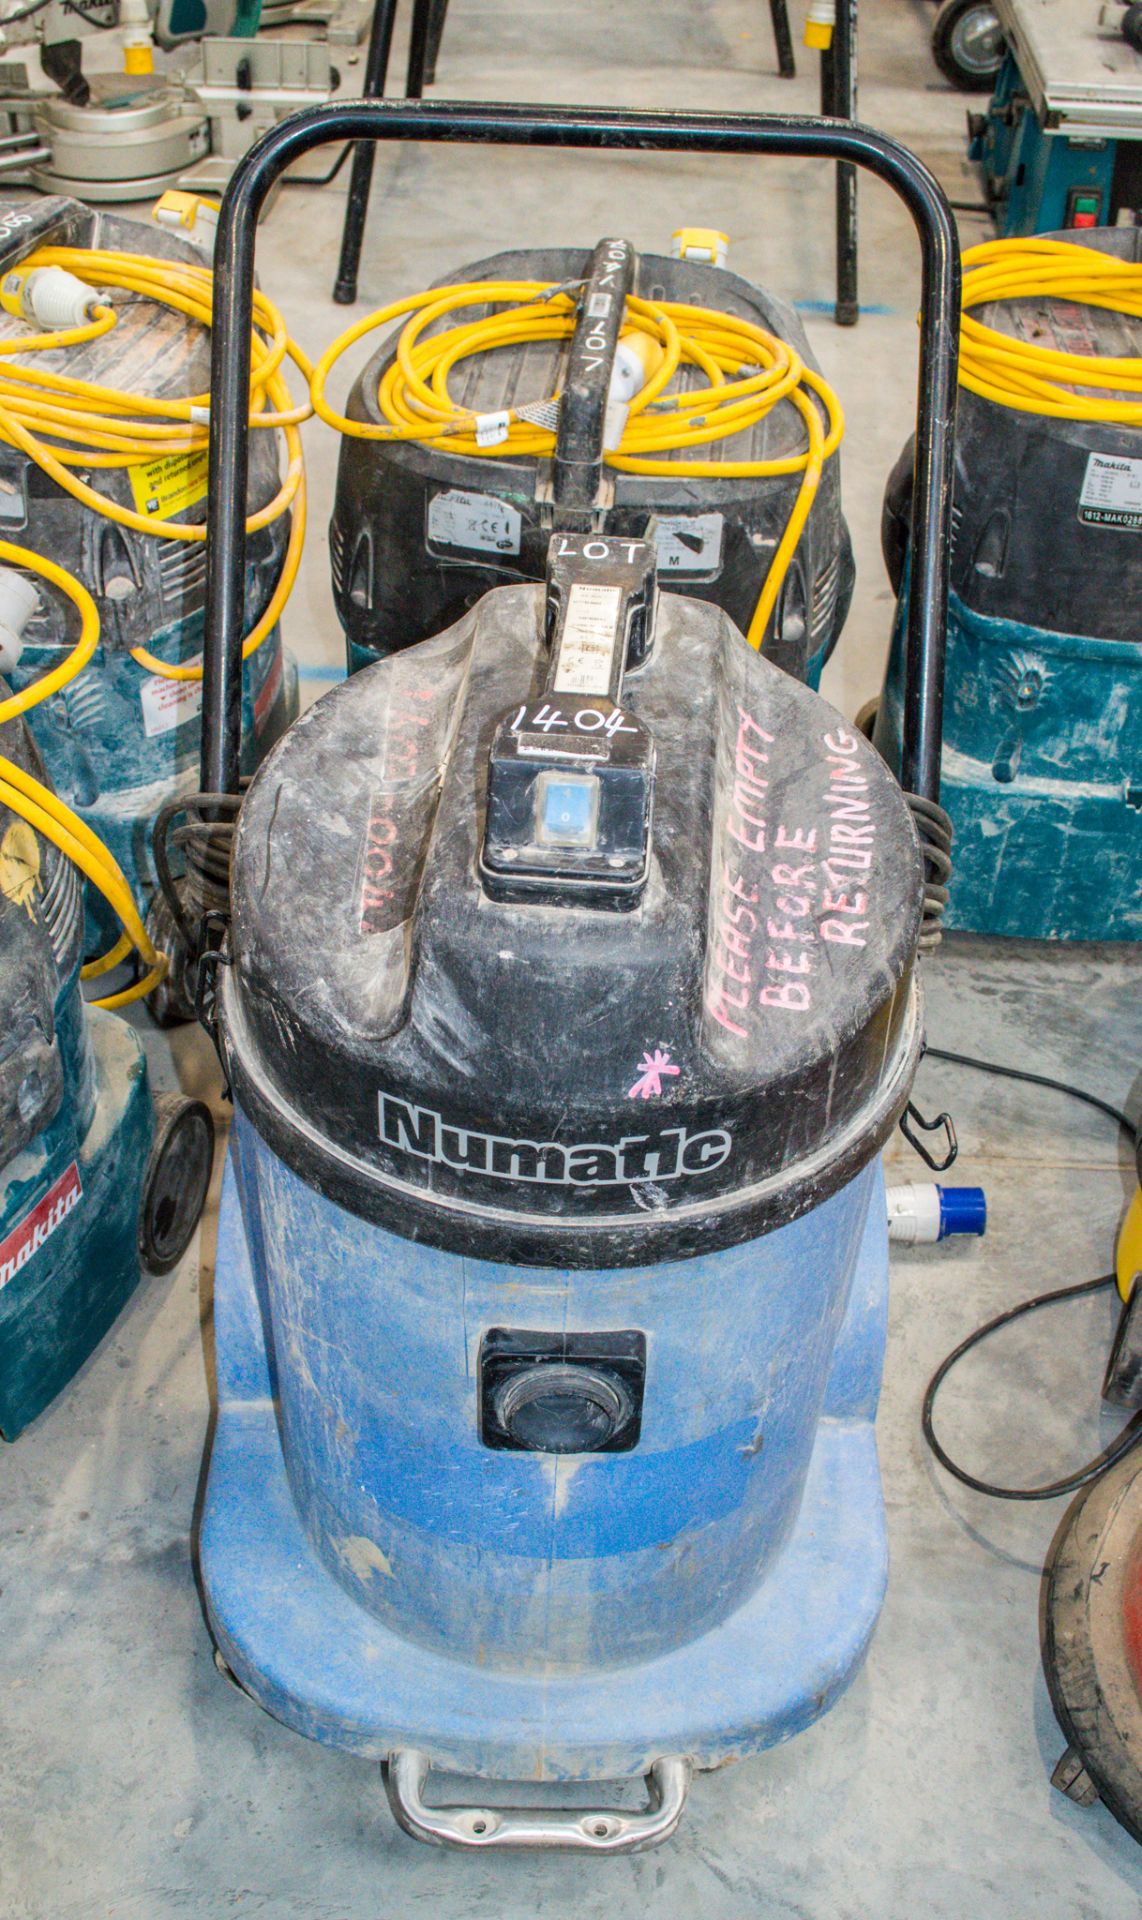 Numatic 110v industrial vacuum cleaner 1402-0044